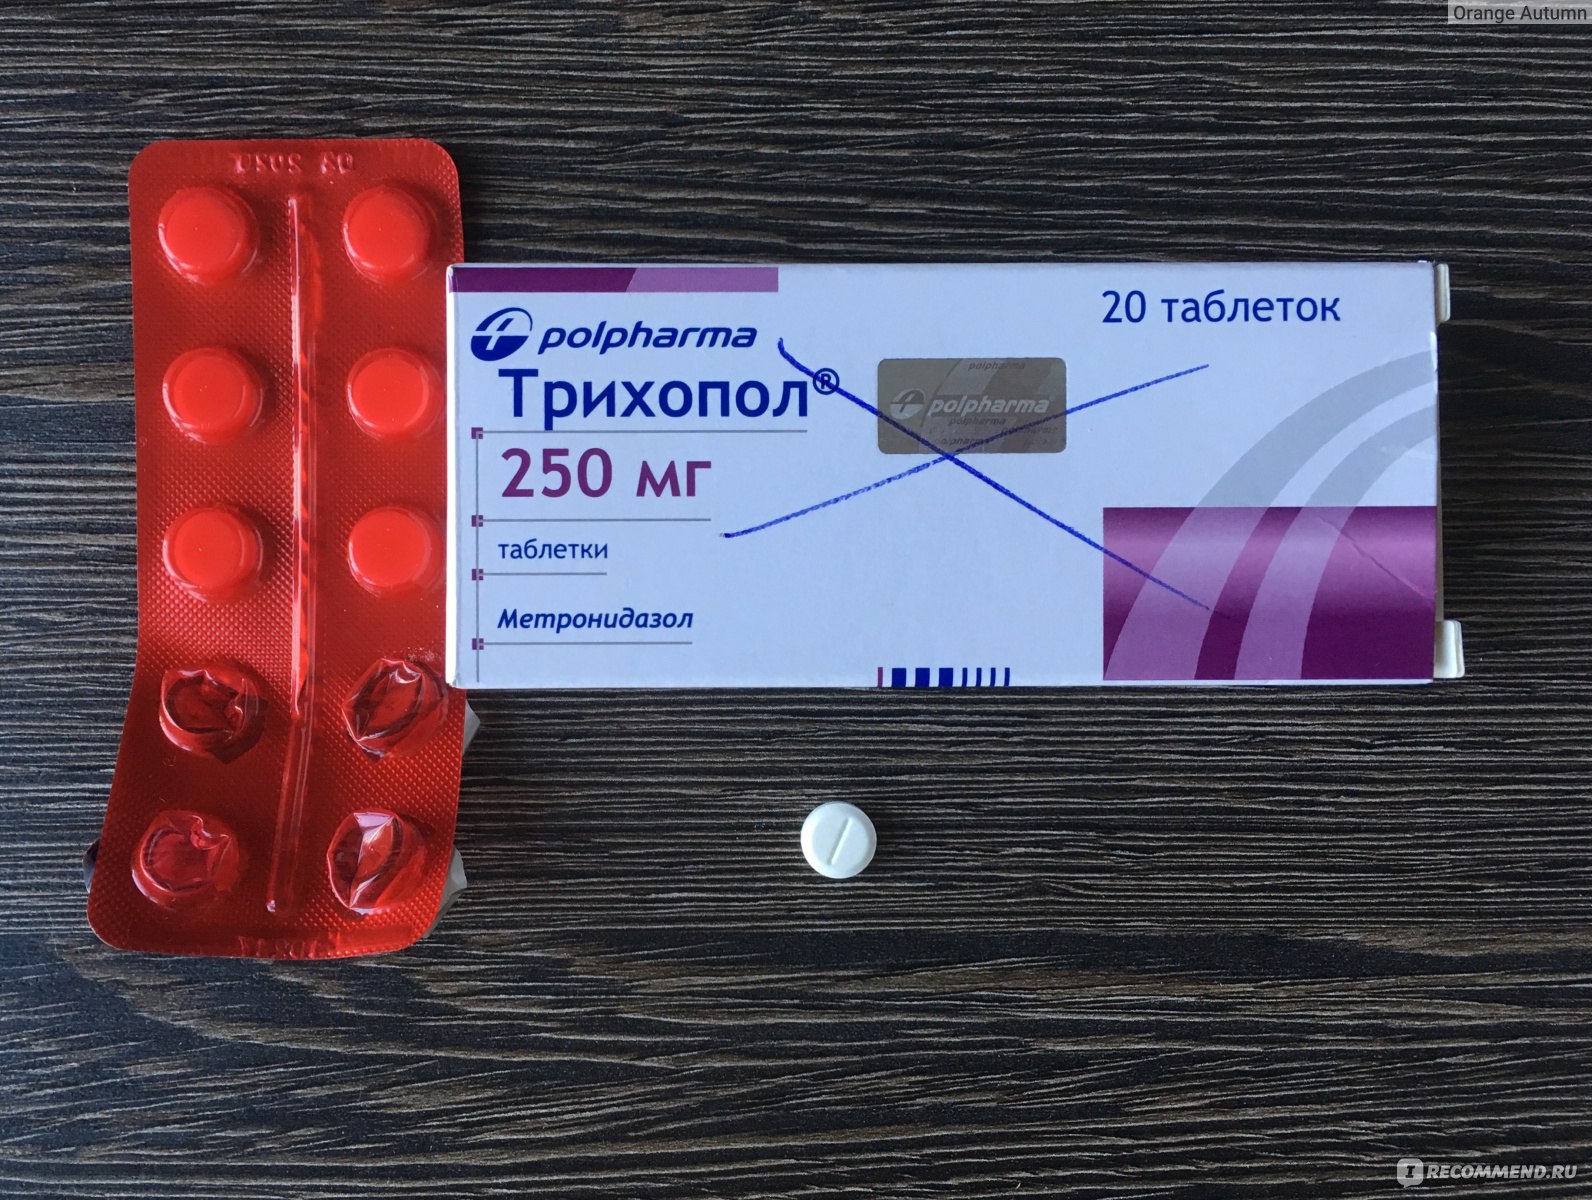 Противопротозойный препарат с антибактериальной активностью Polpharma .